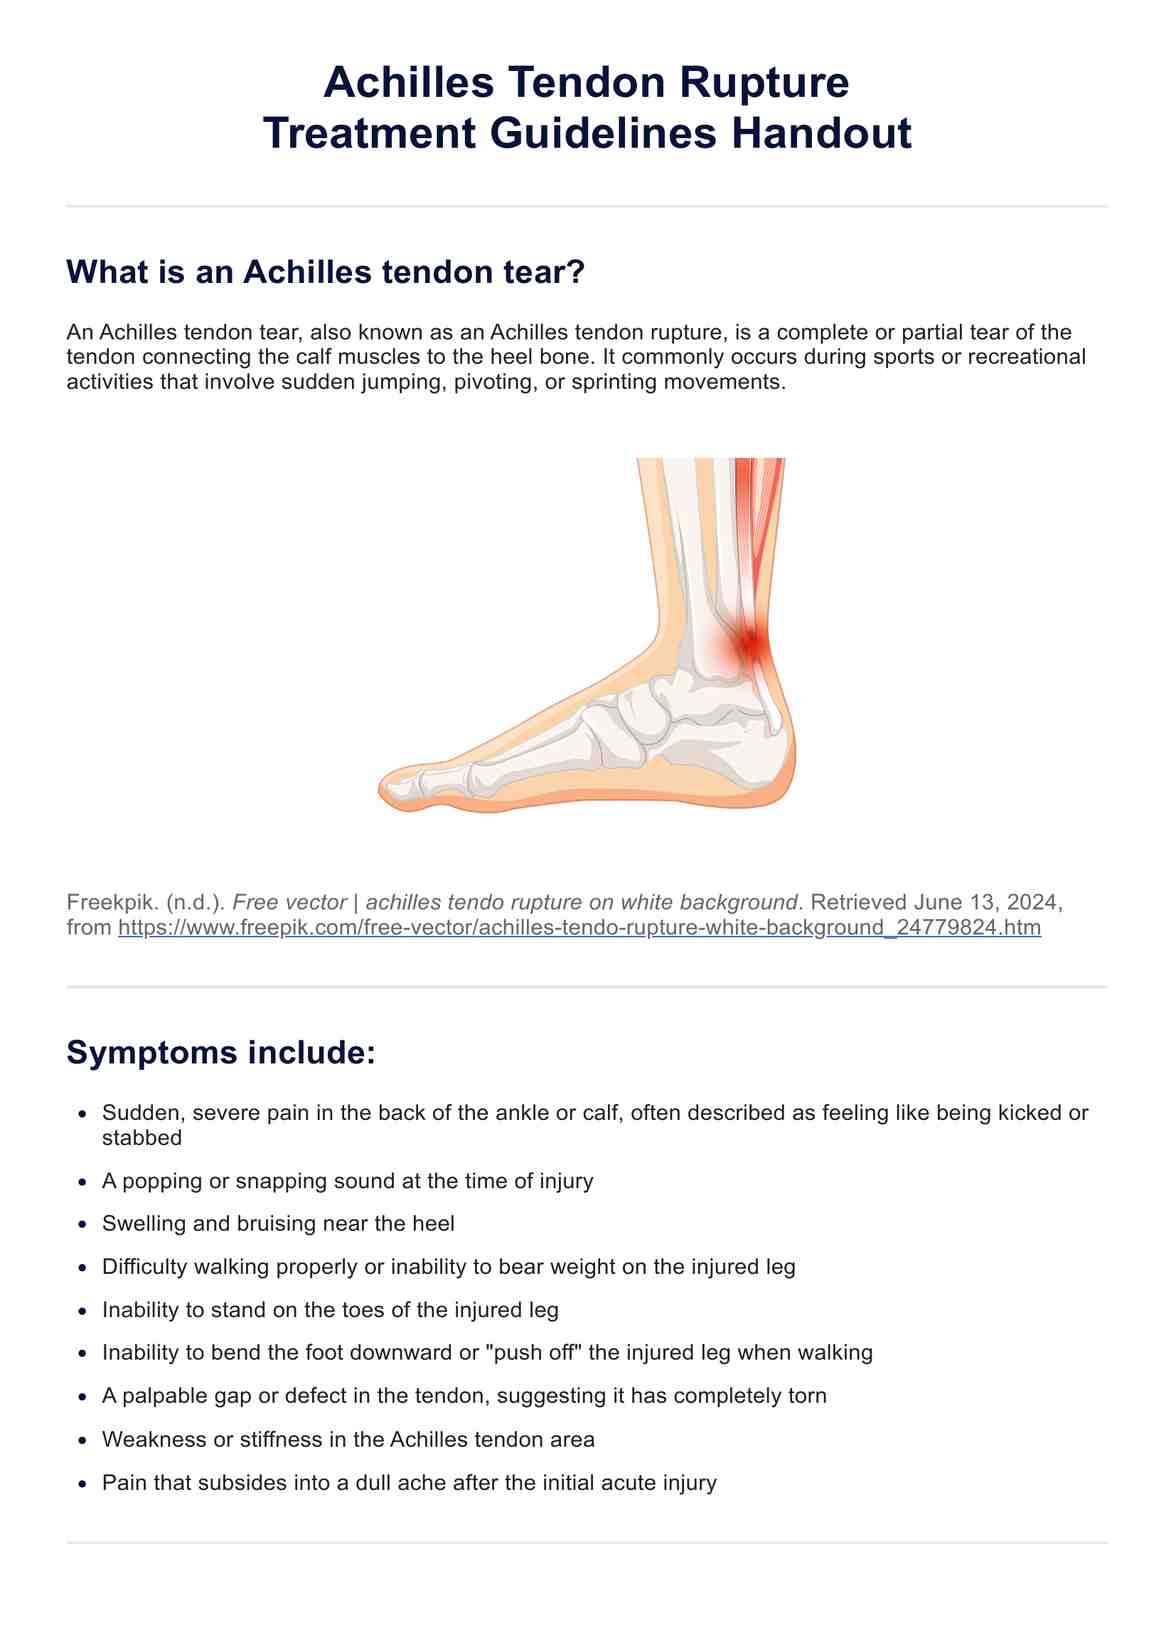 Achilles Tendon Tear Treatment Guidelines Handout PDF Example